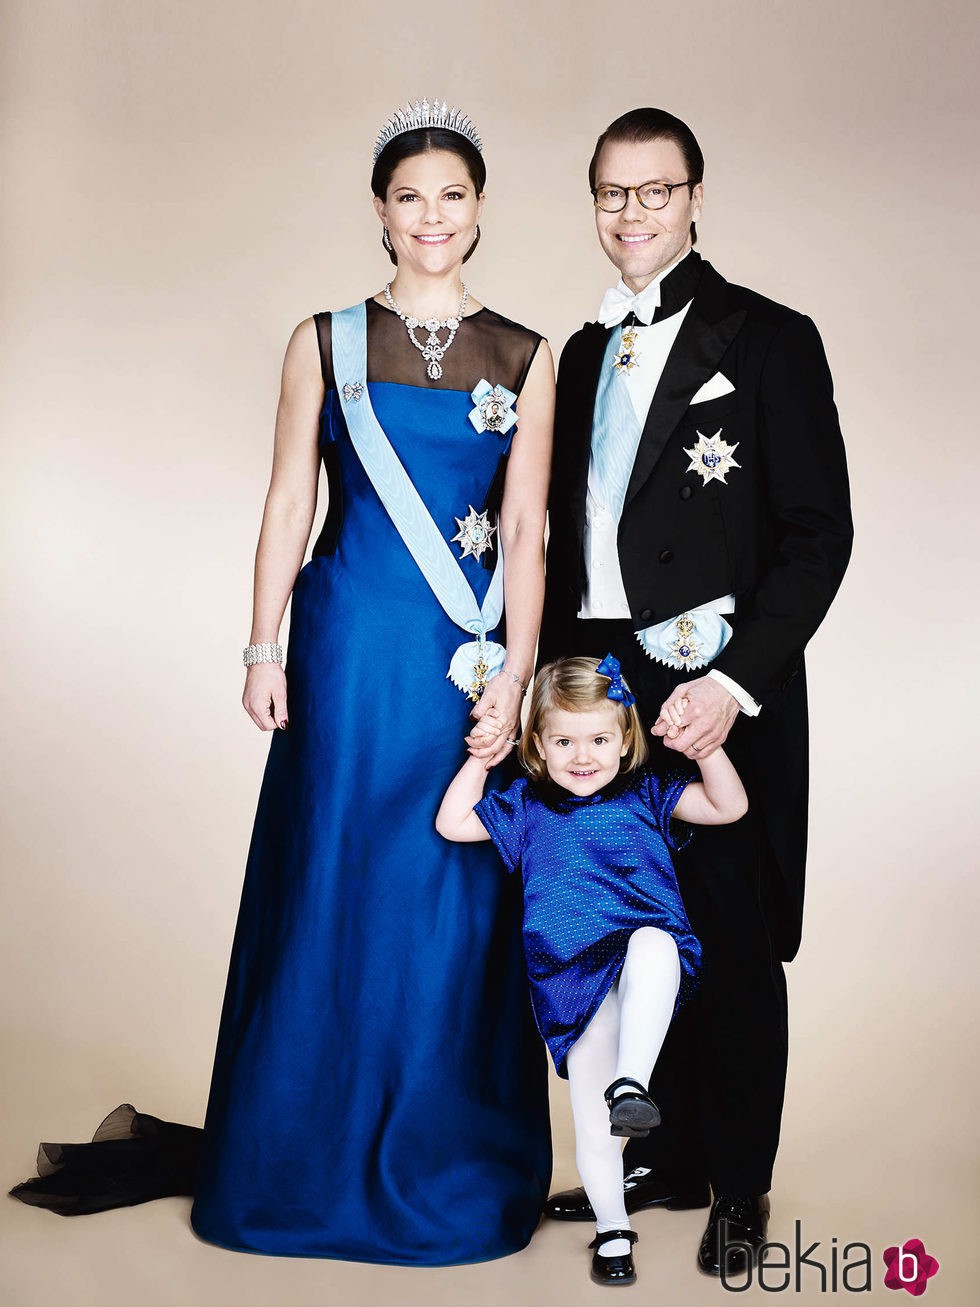 Foto oficial de Victoria y Daniel de Suecia con la Princesa Estela vestidos de gala